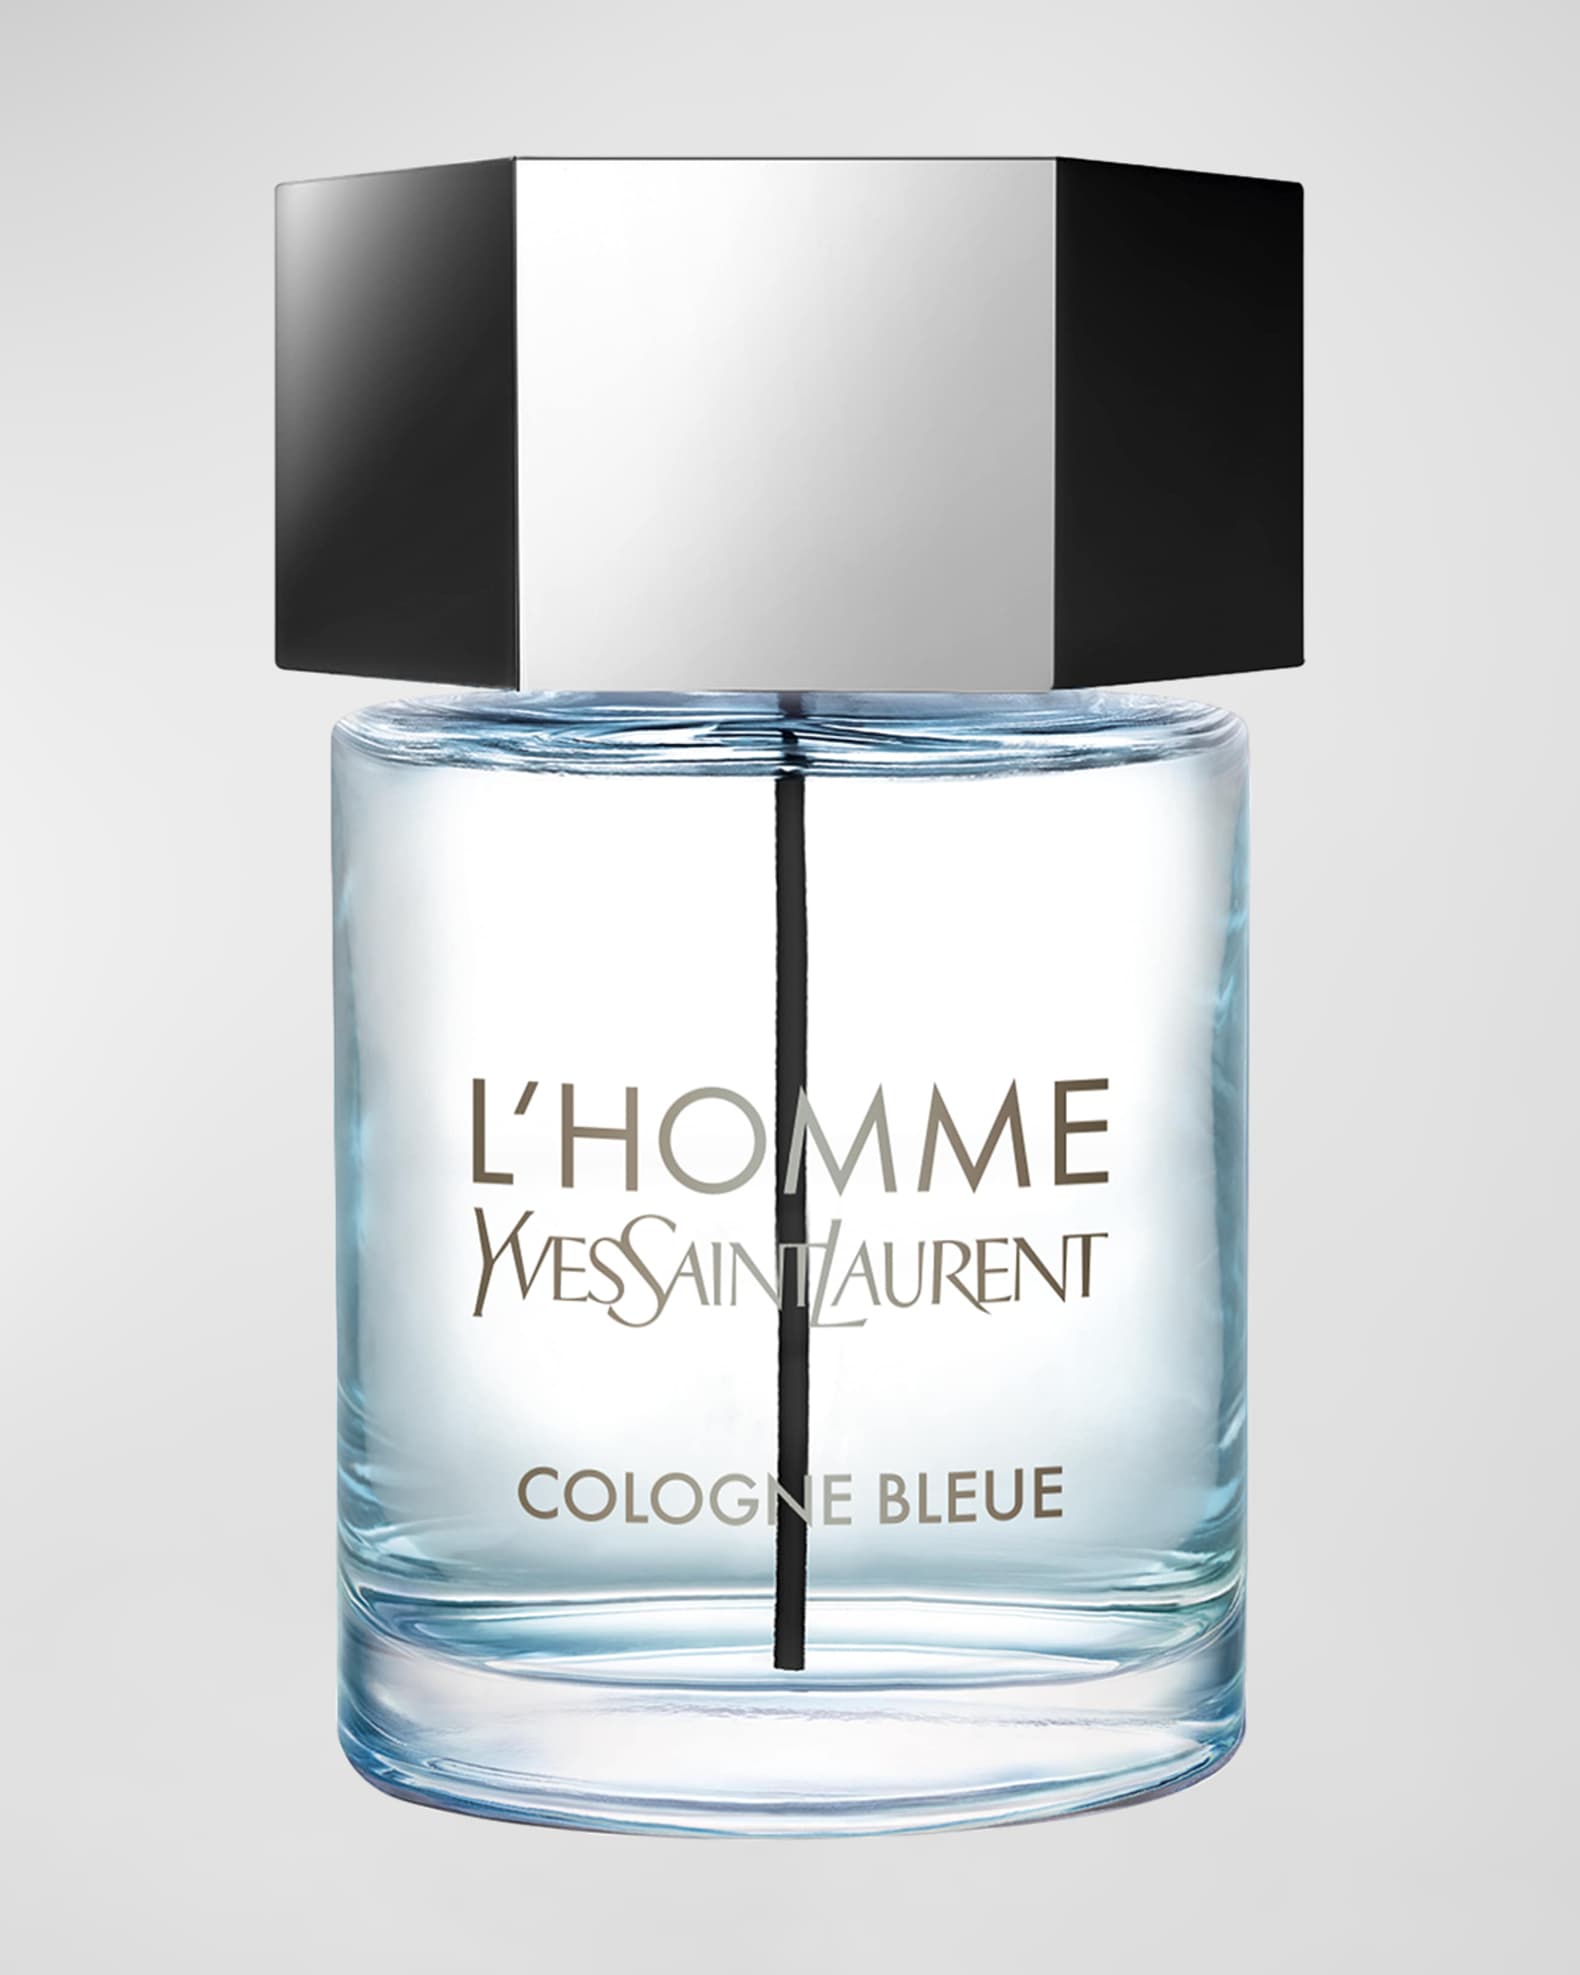 CHANEL BLEU DE CHANEL Eau de Parfum Pour Homme Spray, 5.0 oz./ 148